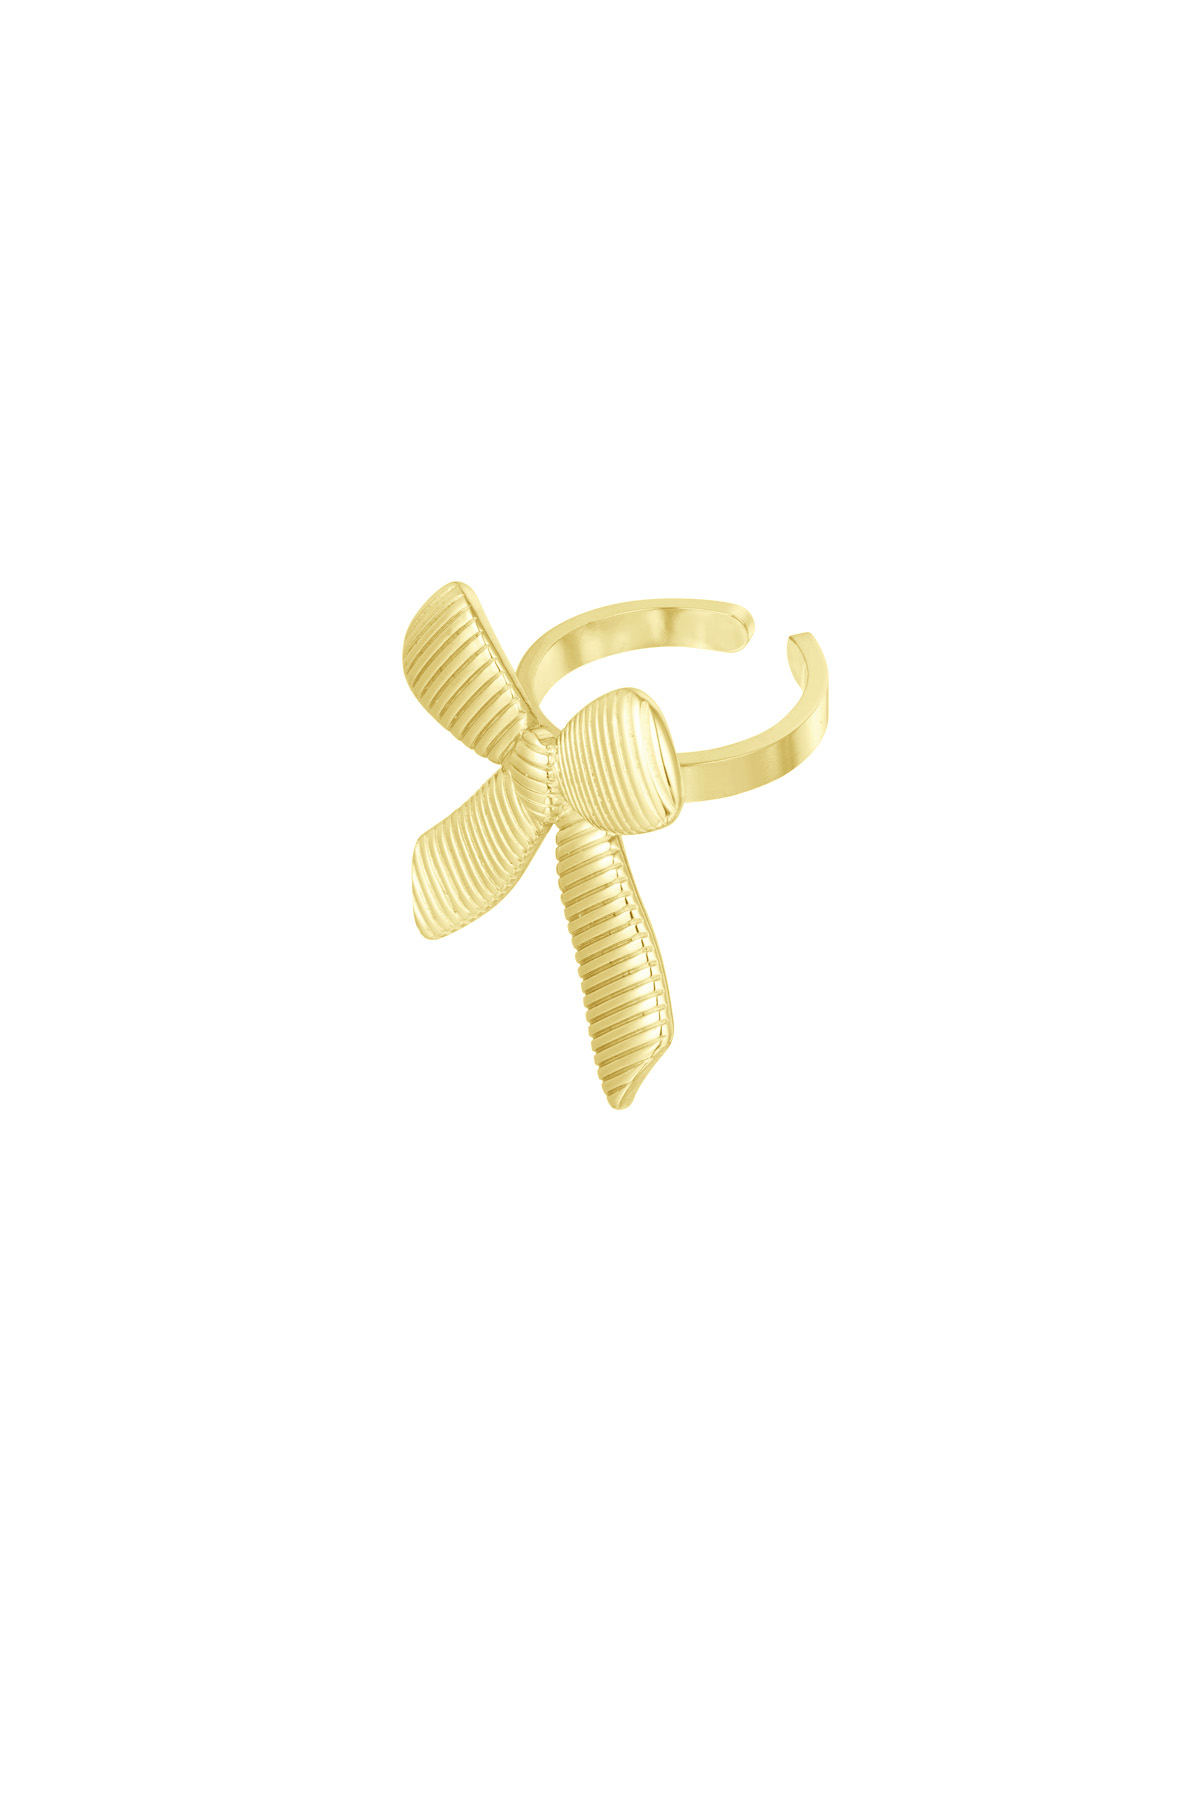 Simpele ring met strik - goud  h5 